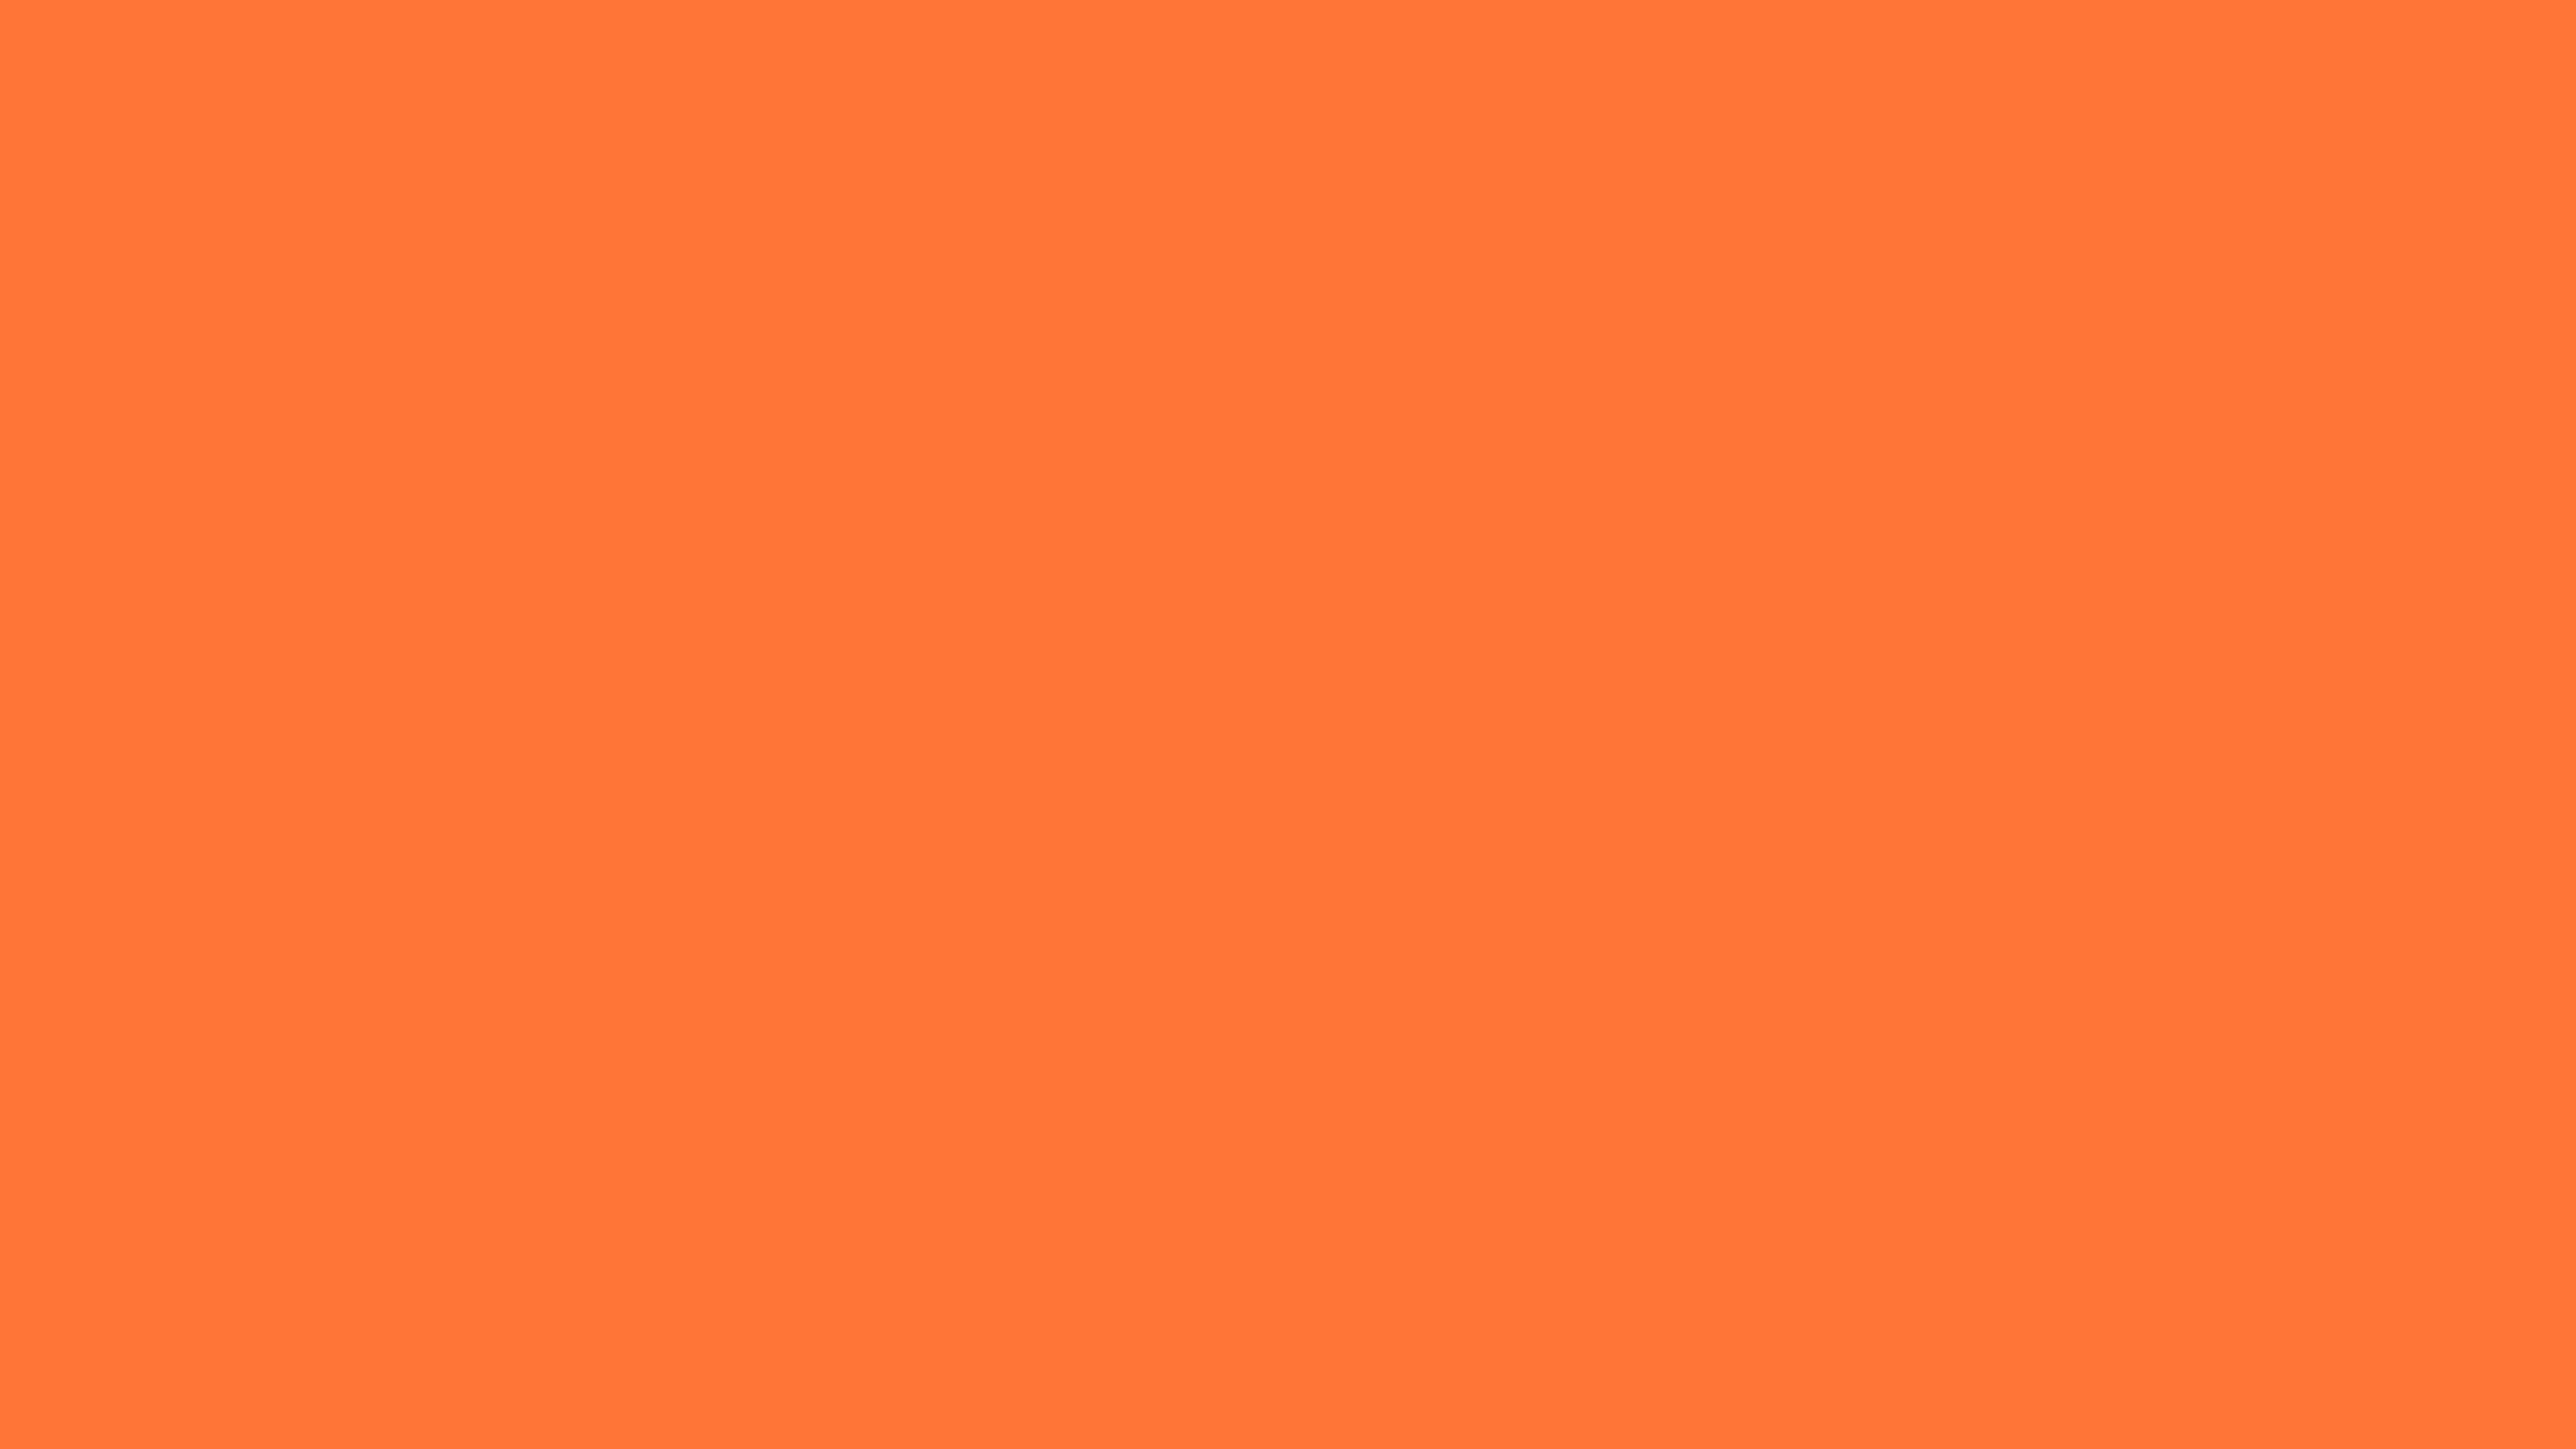 5120x2880 Orange Crayola Solid Color Background